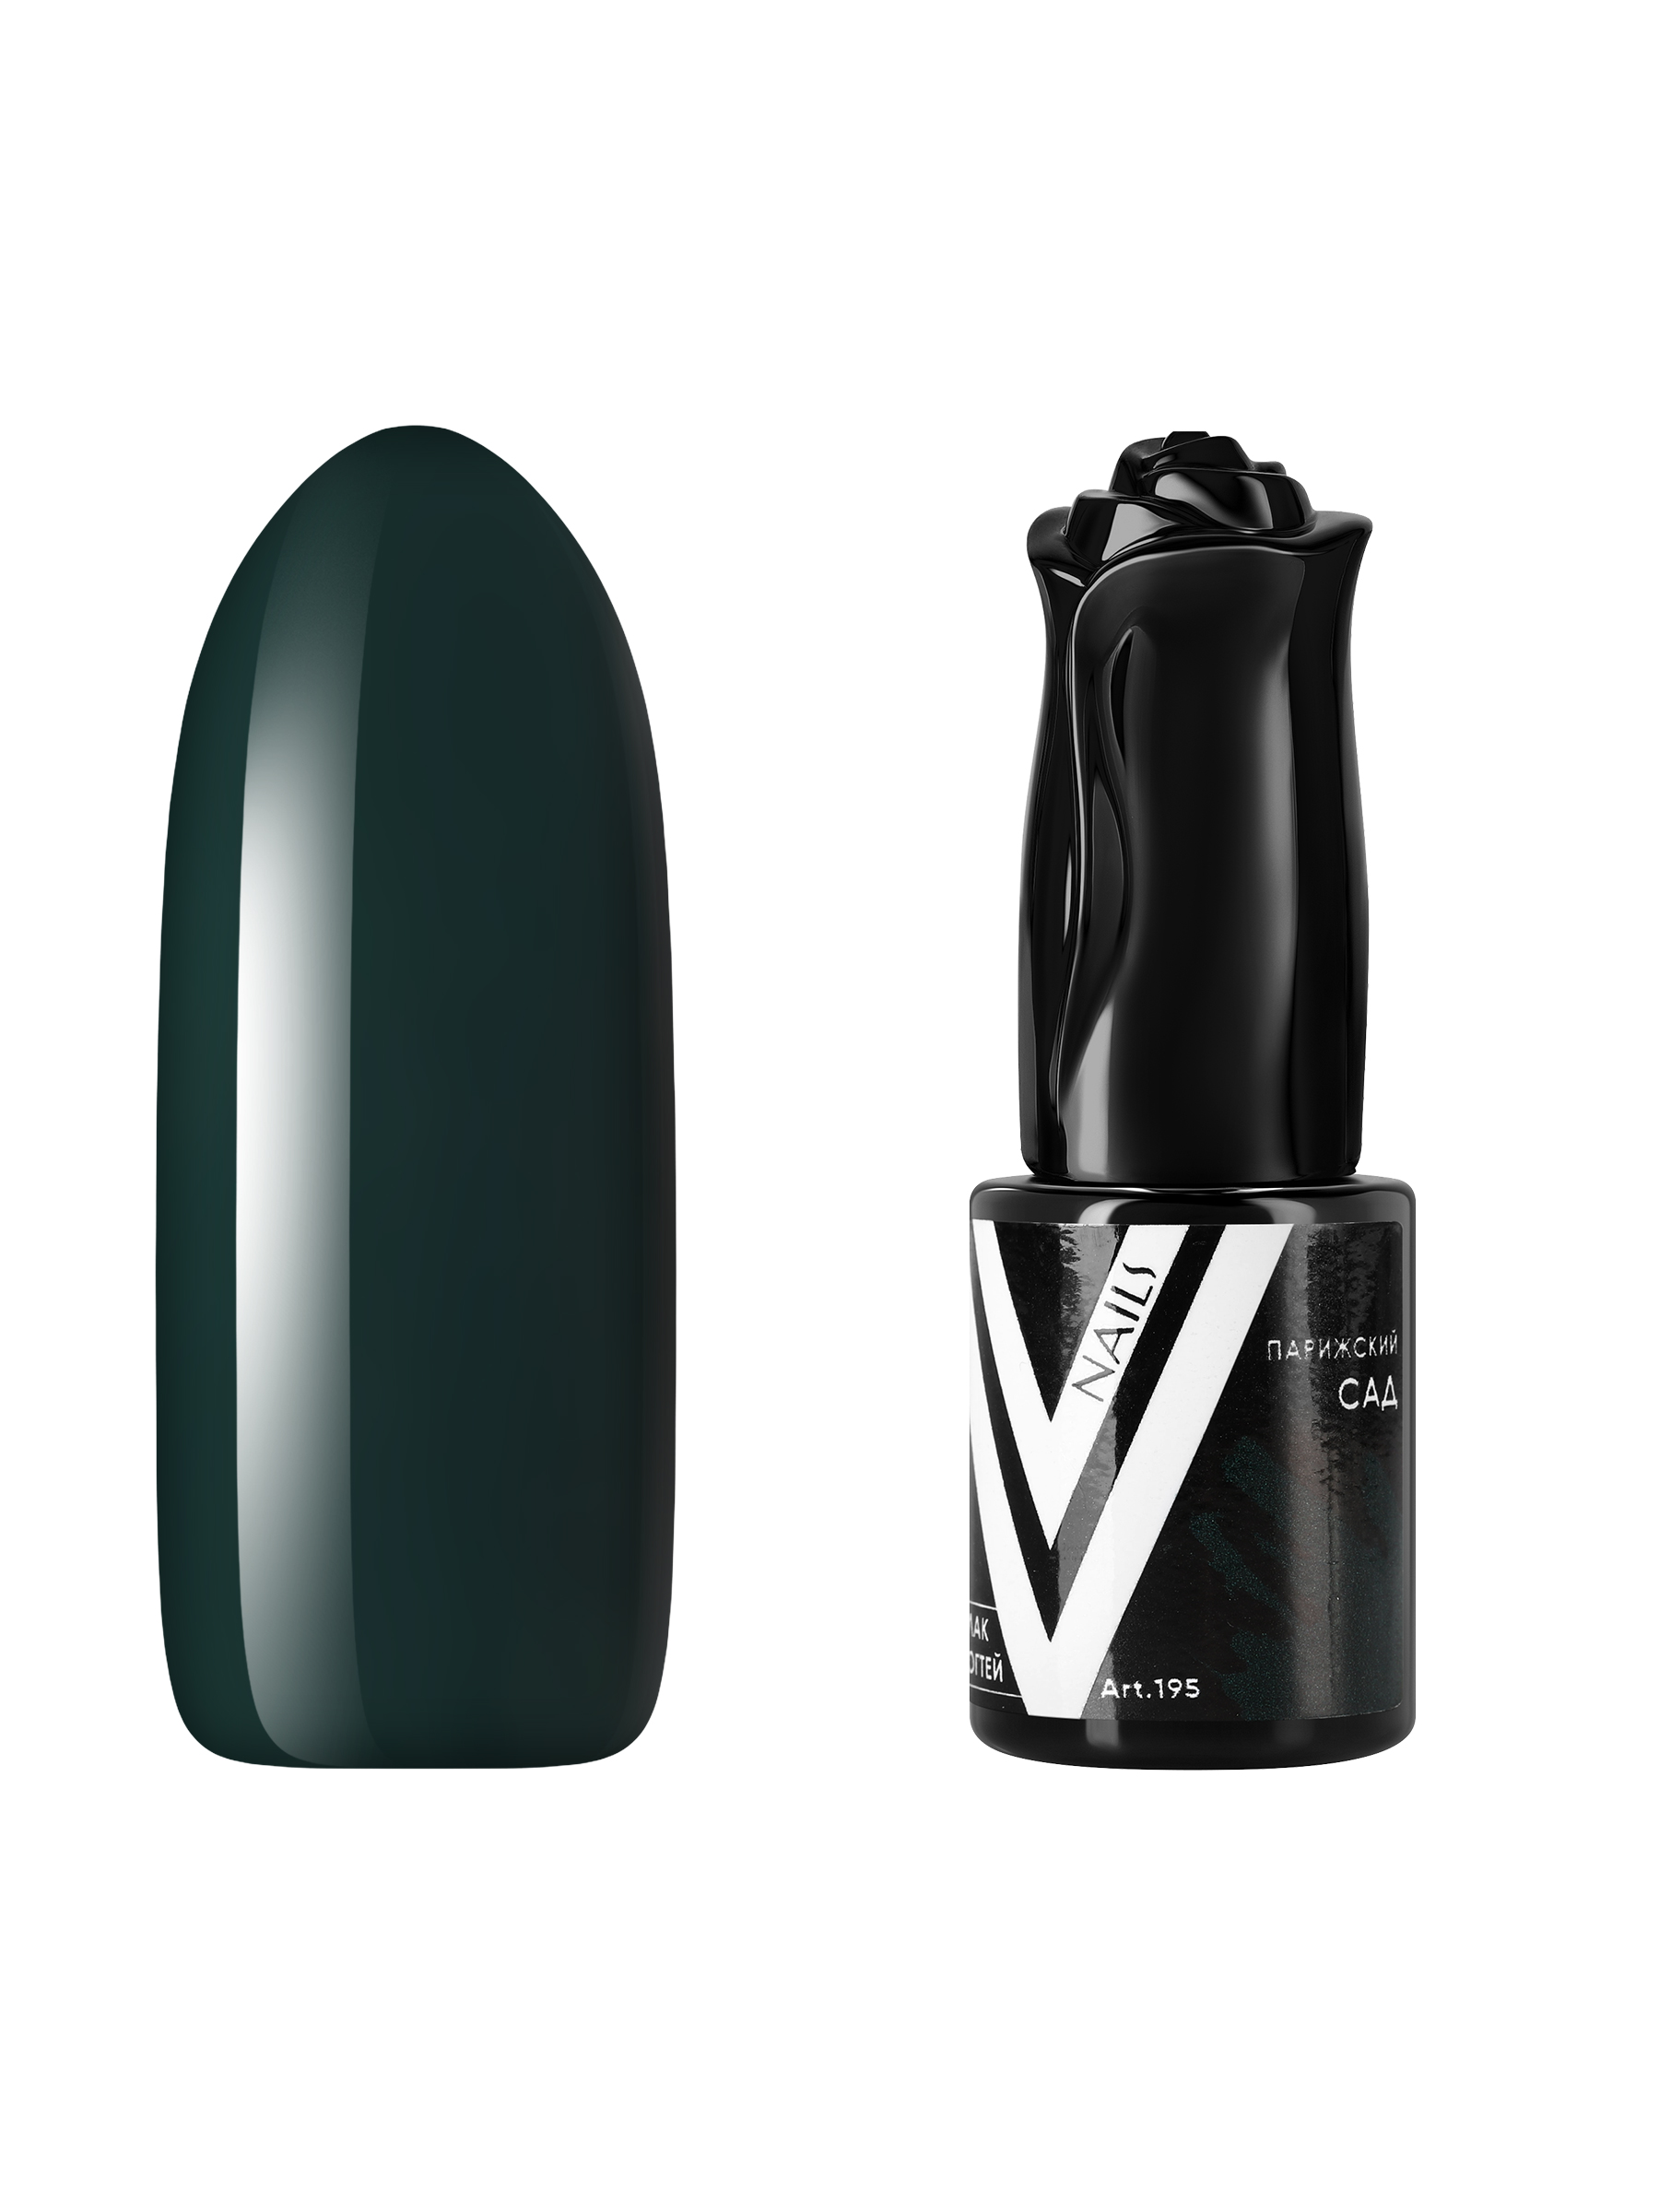 Гель-лак для ногтей Vogue Nails плотный самовыравнивающийся, темный зеленый, 10 мл гуашь dmast дой пак 80 мл 501 зеленый темный